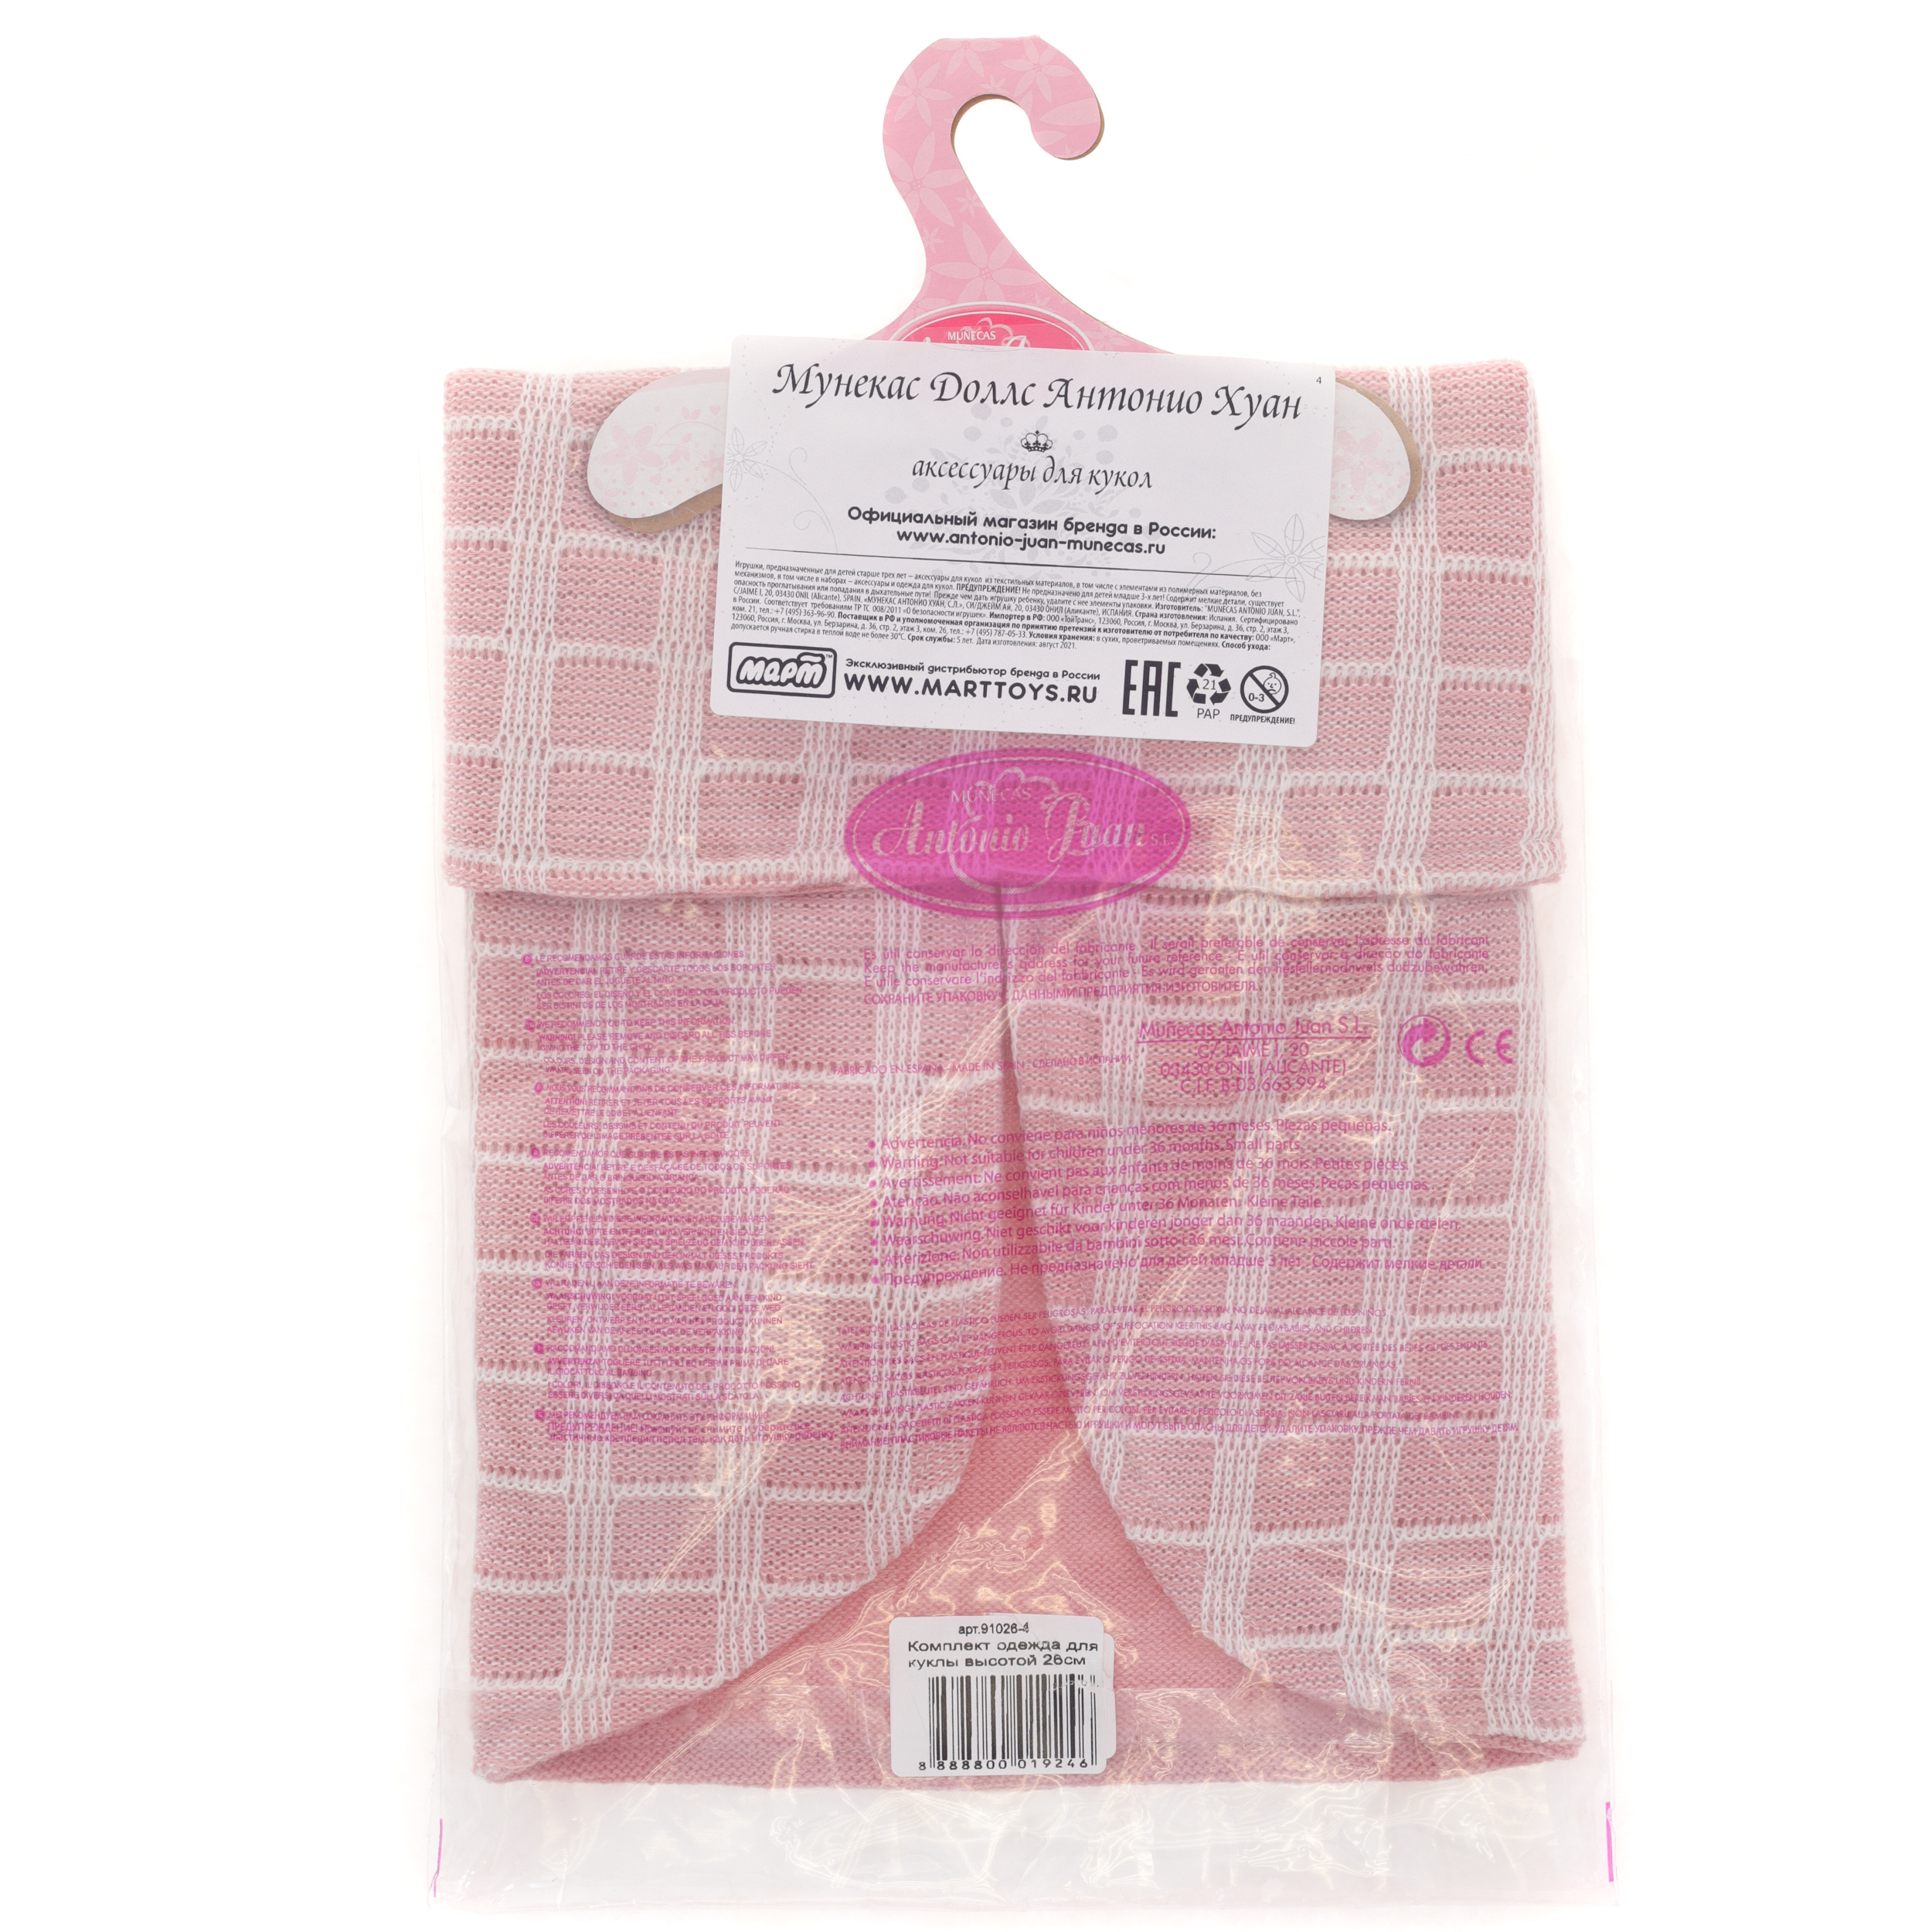 Комплект одежды для кукол 26 см розовое одеяло шапка слюнявчик трусики  